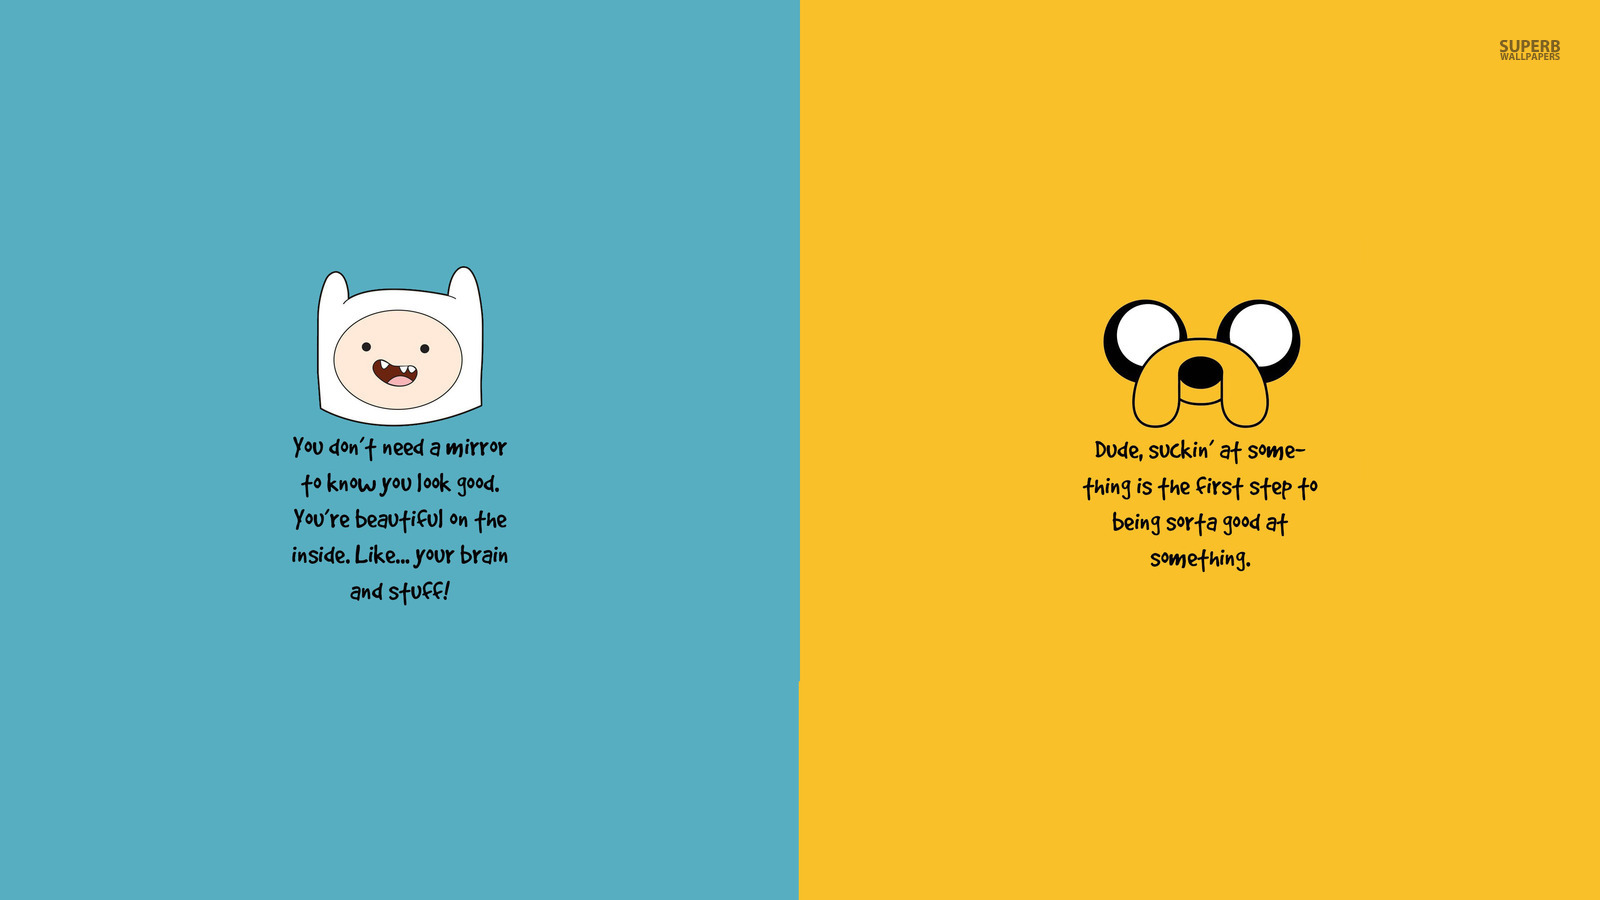 Adventure Time - Cartoon Network Wallpaper (38672283) - Fanpop